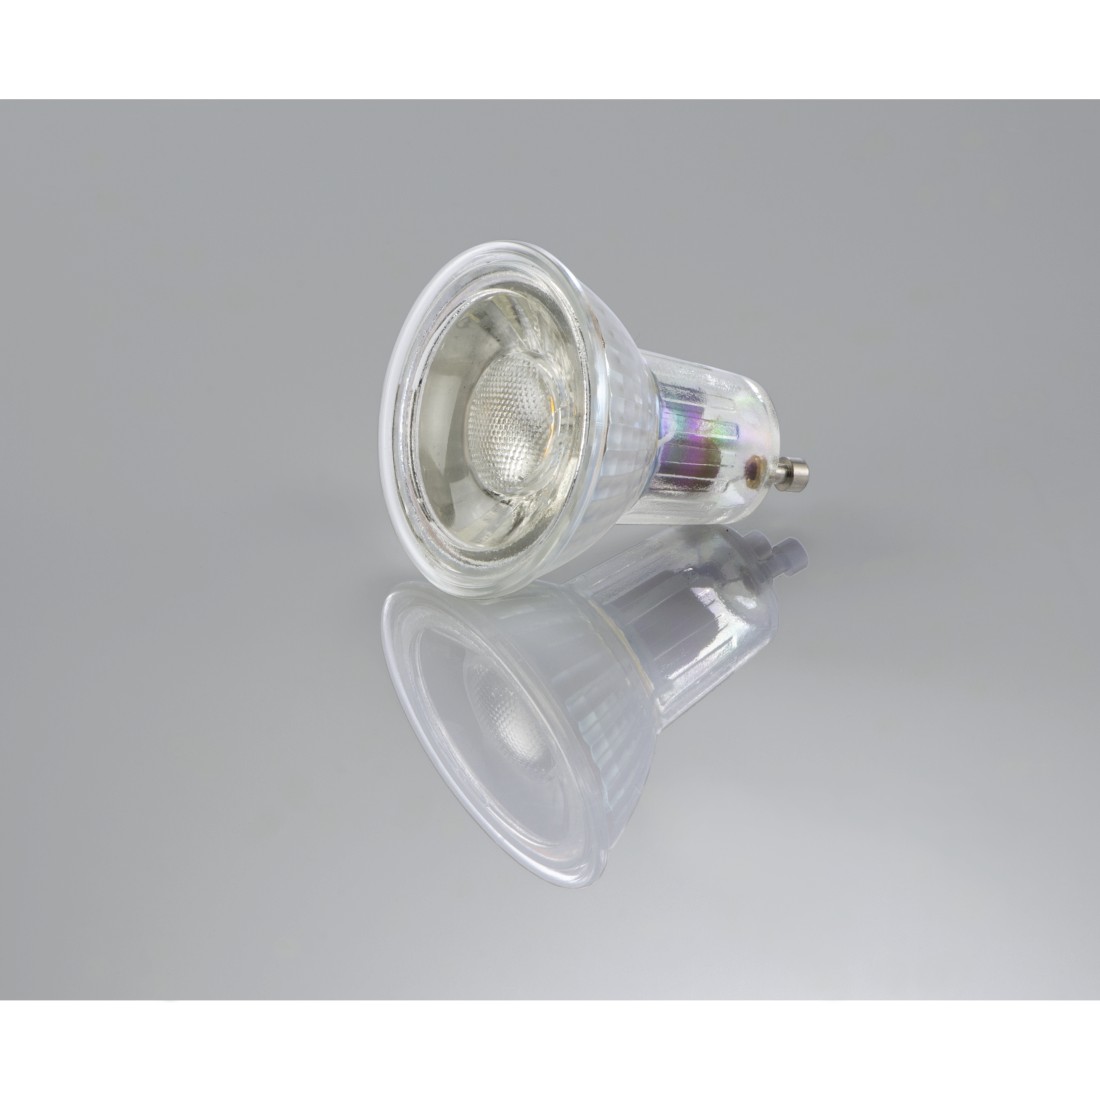 abx3 High-Res Image 3 - Xavax, Ampoule LED, GU10, 400lm remp. 50W, amp. réfl. PAR16, bl. chd., verre